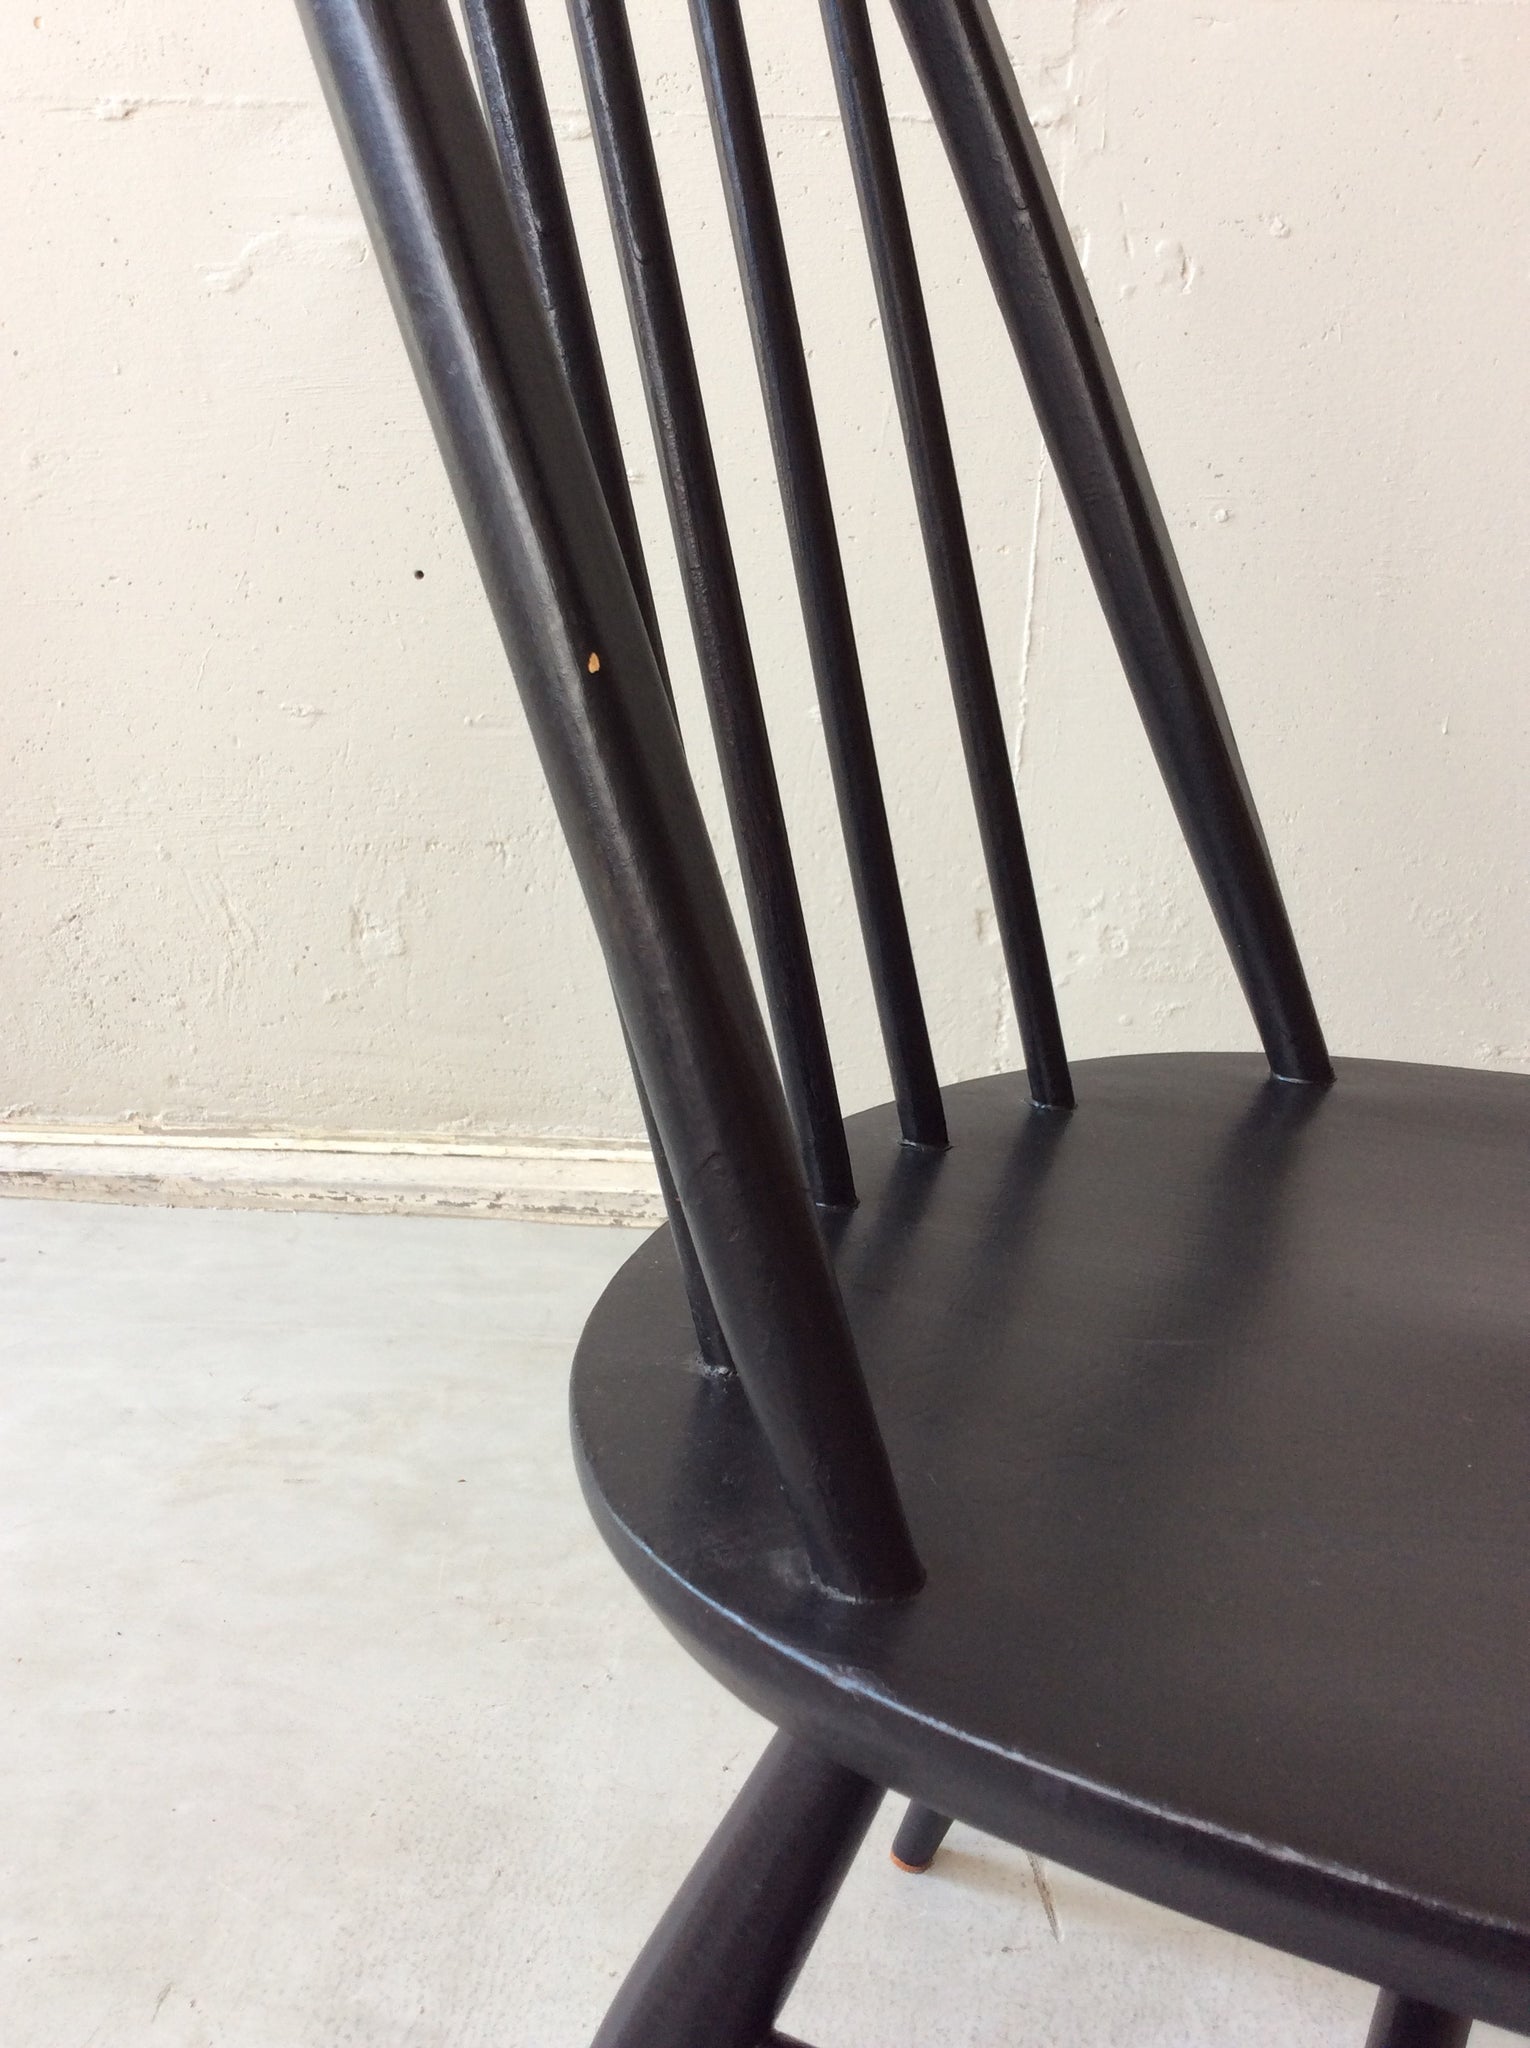 アーコール クエーカー ウィンザー チェア / ercol quaker windsor chair '365' #0088